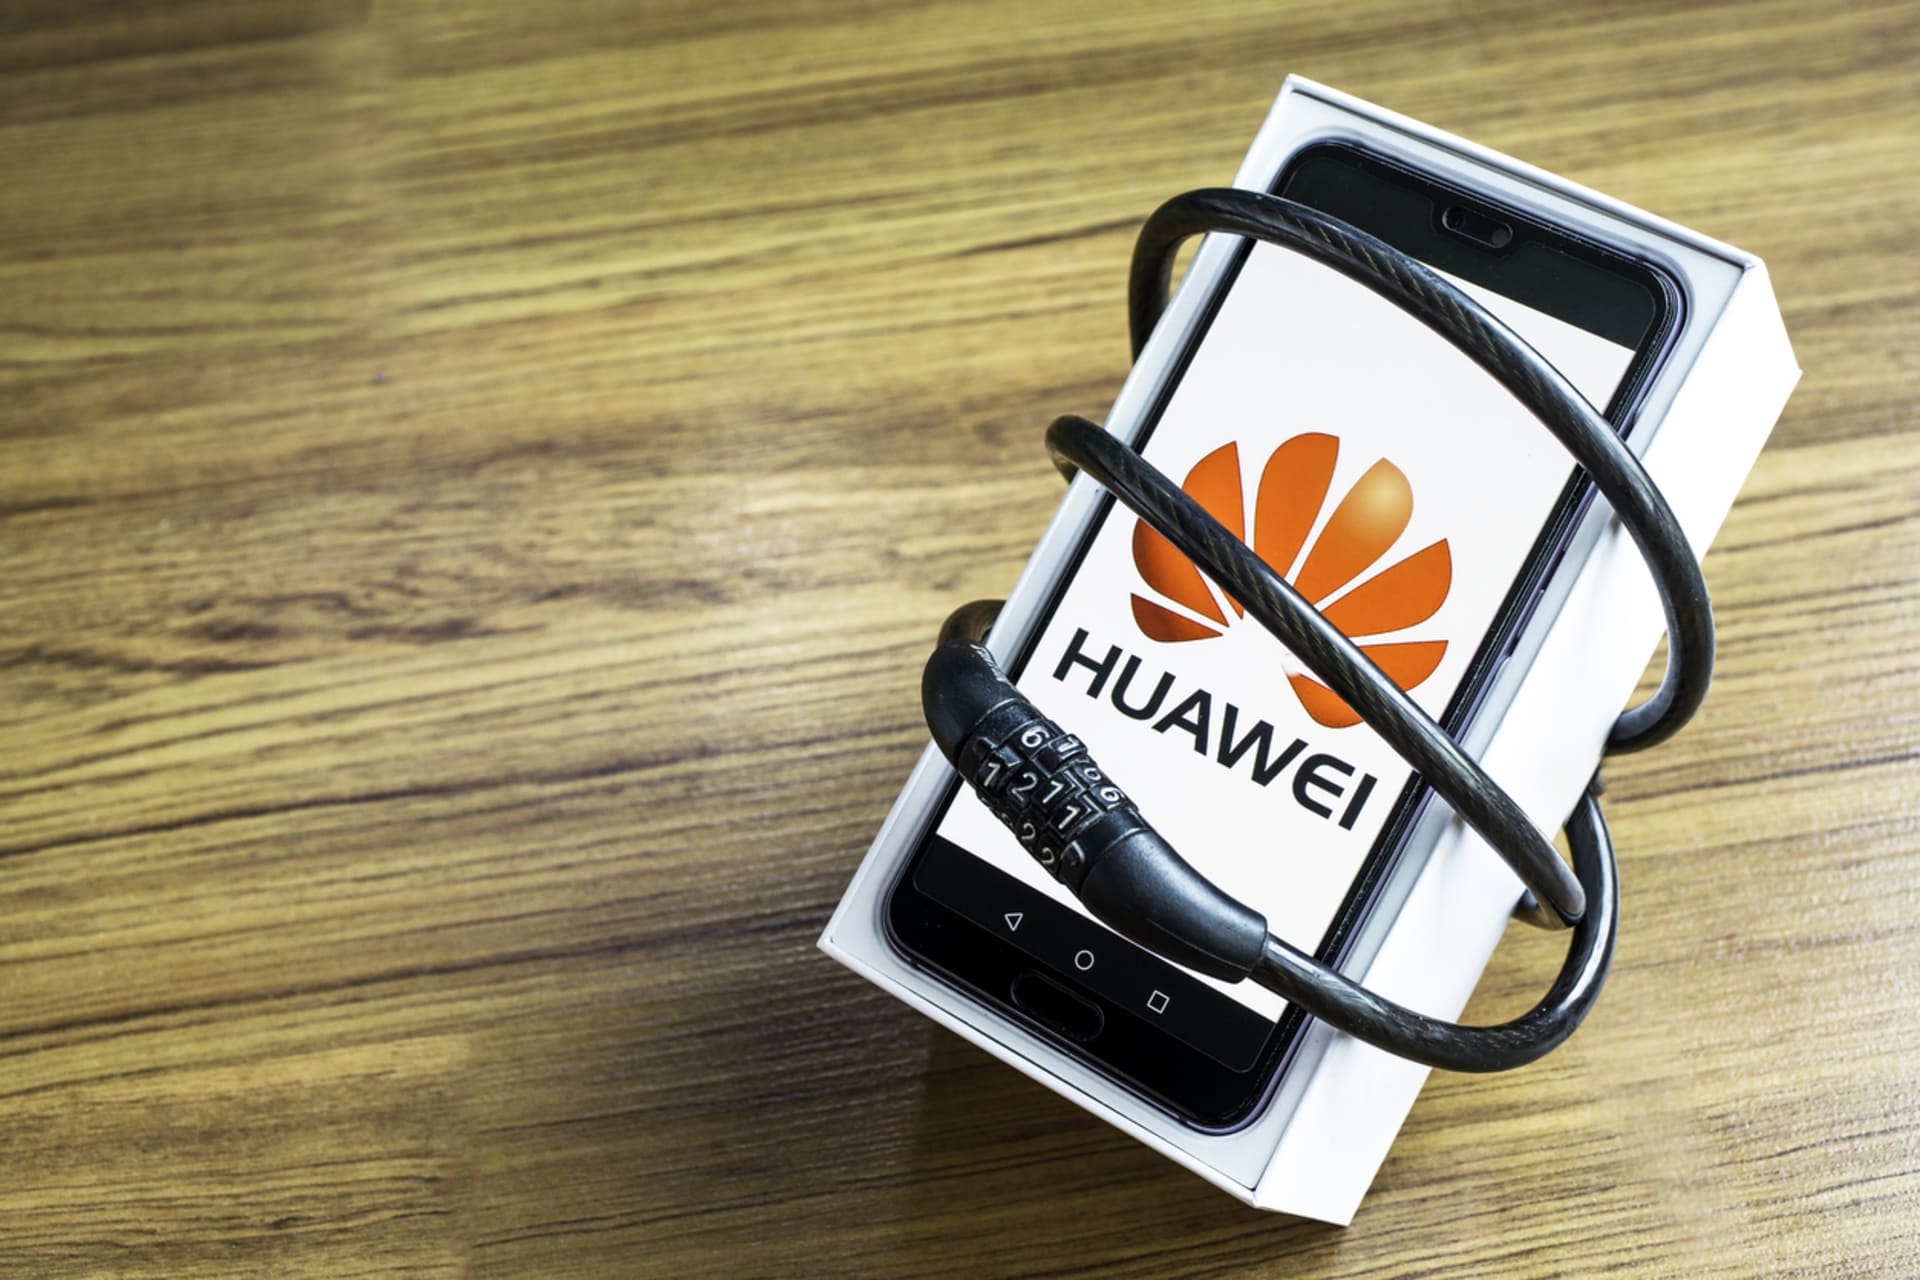 Huawei svazuje americká obchodní blokáda